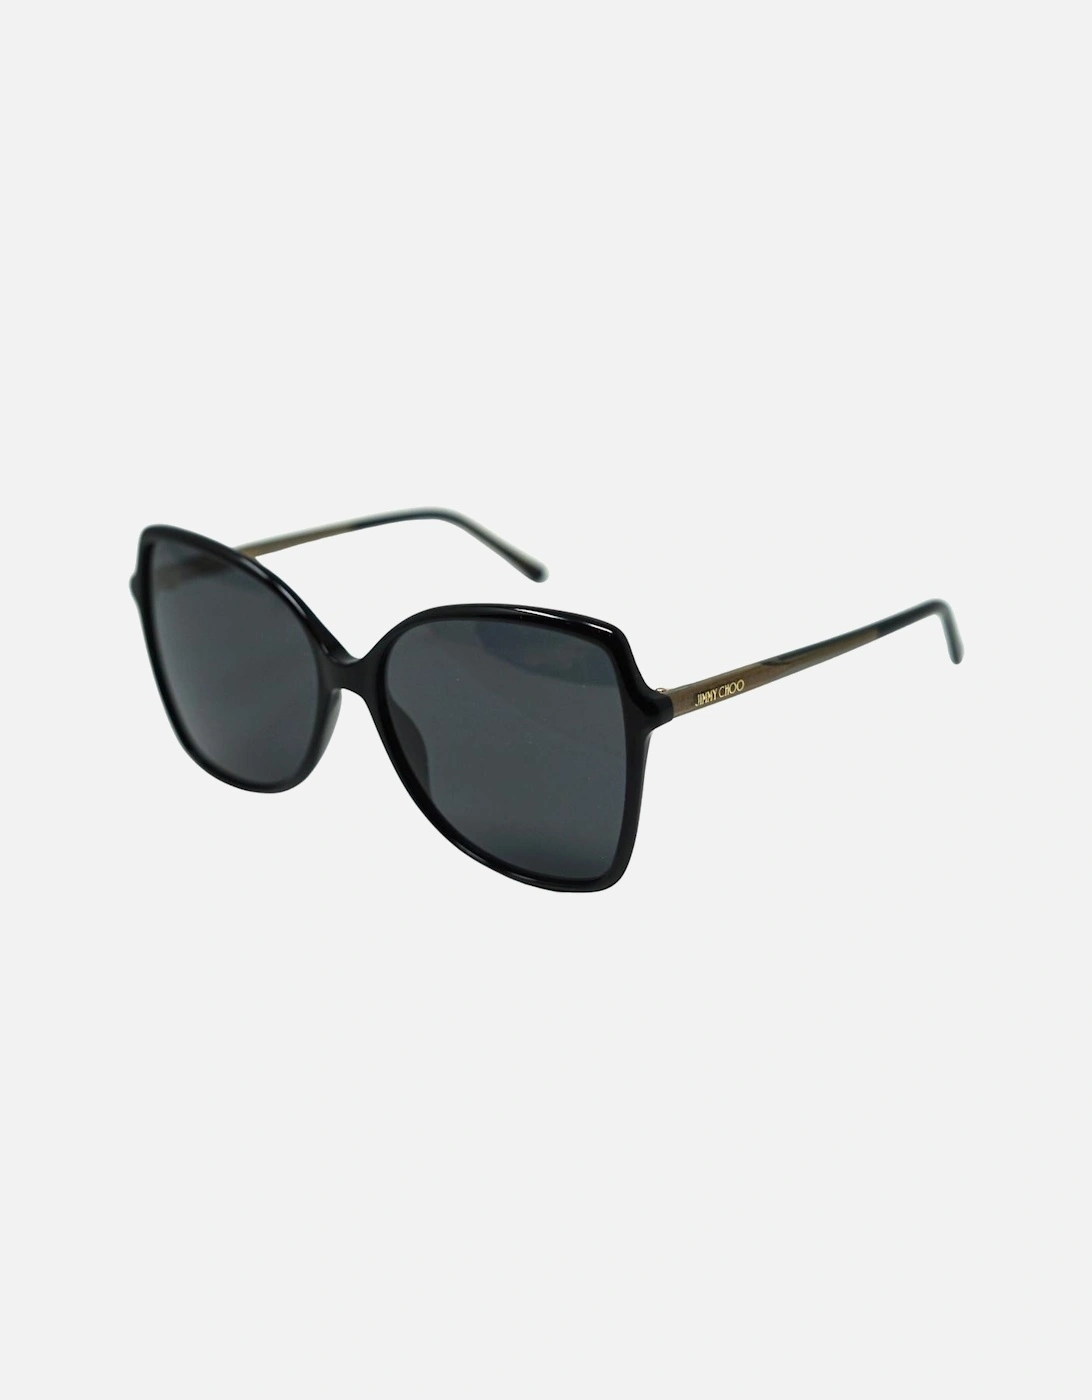 Fede/S 0807 IR Black Sunglasses